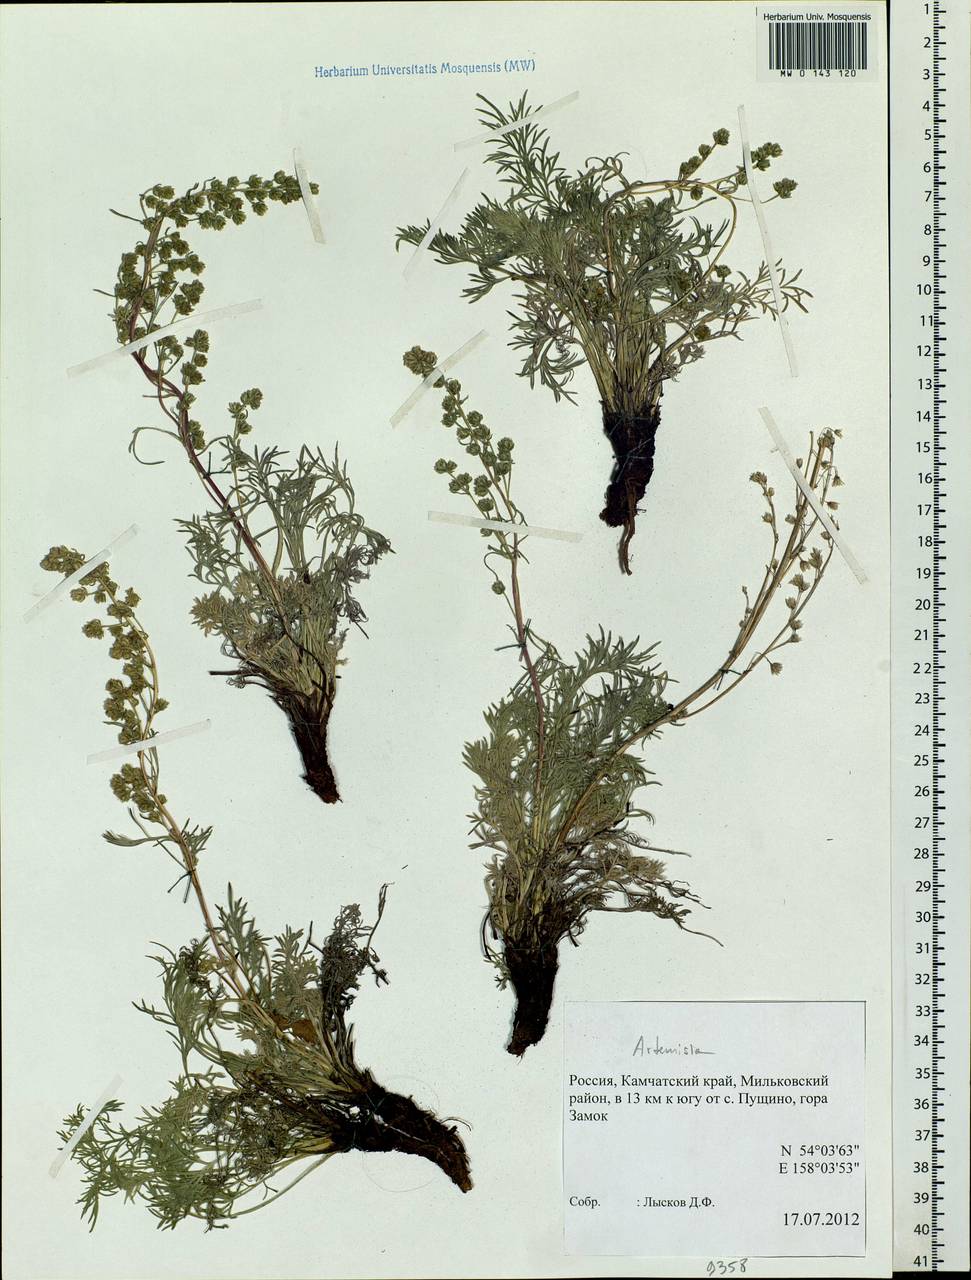 Artemisia, Siberia, Chukotka & Kamchatka (S7) (Russia)